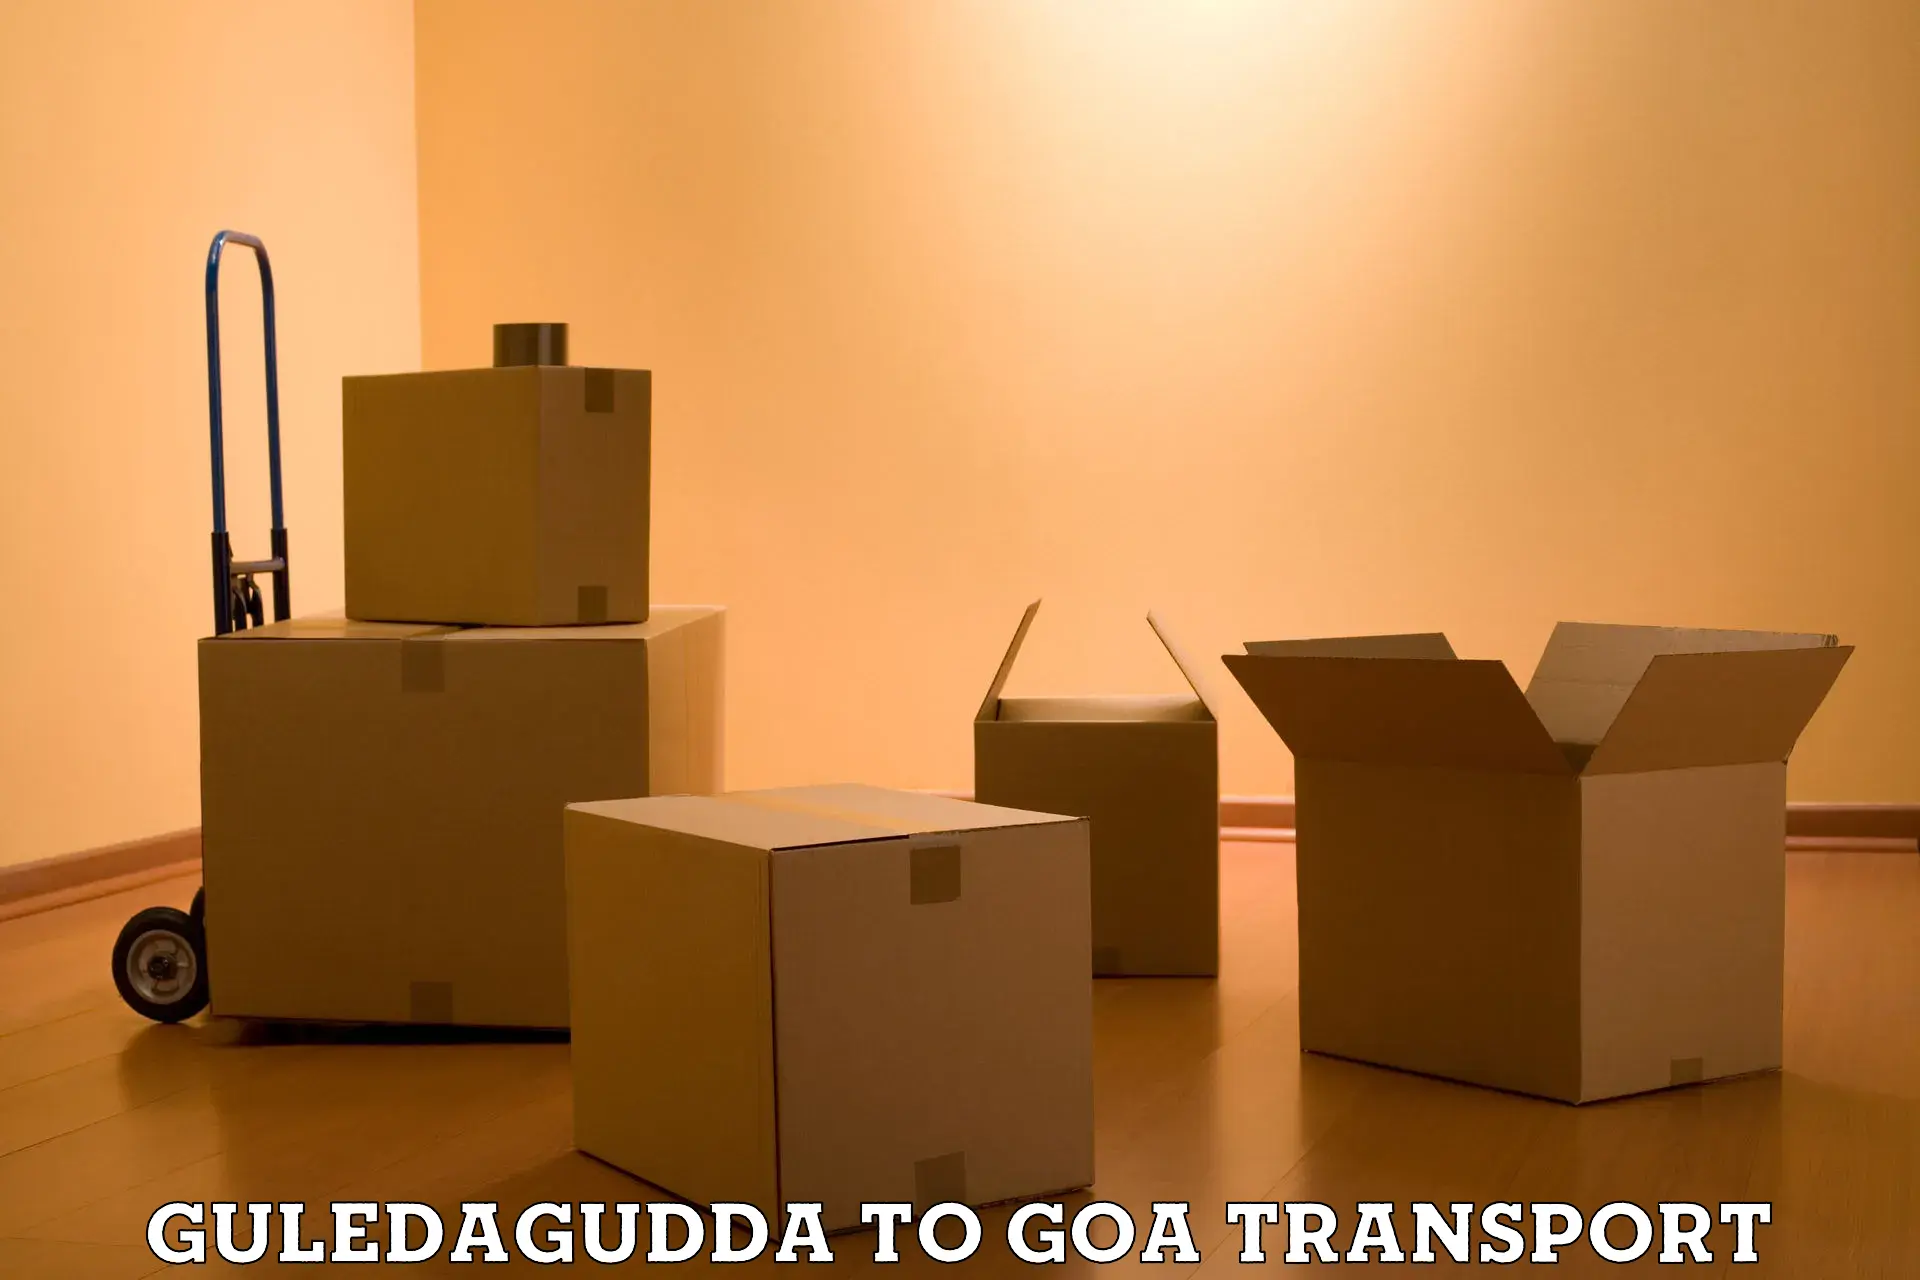 Door to door transport services Guledagudda to Goa University